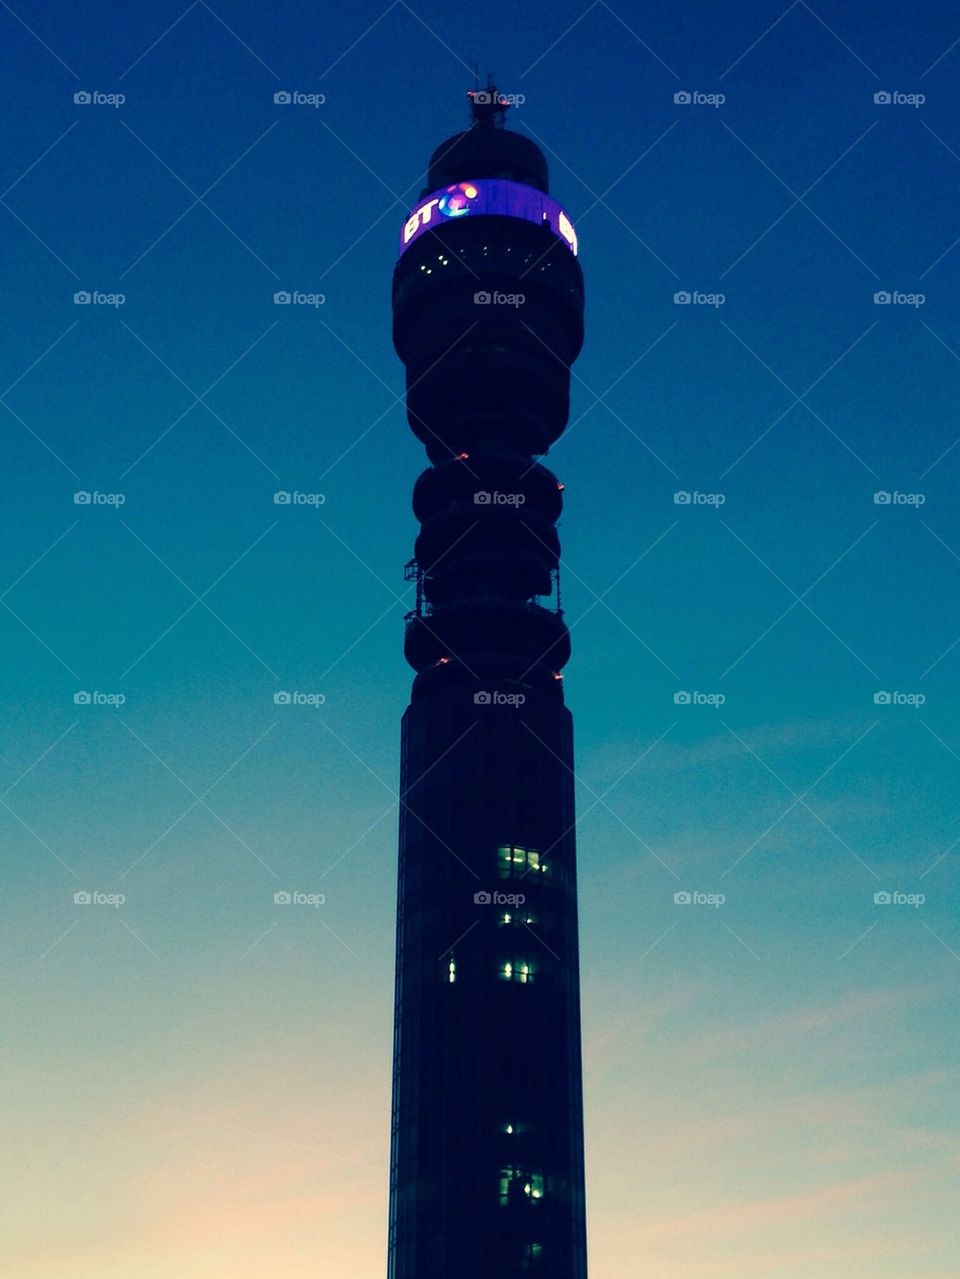 BT tower